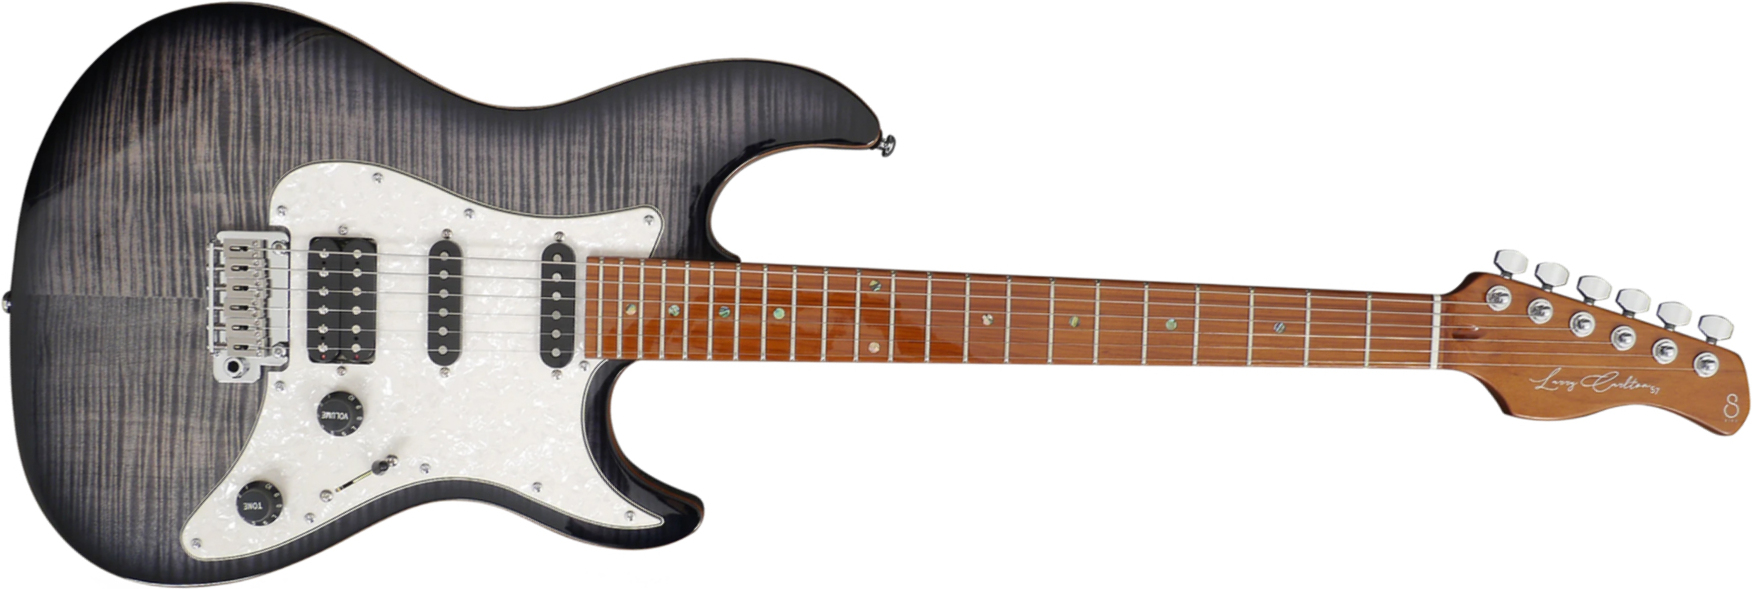 Sire Larry Carlton S7 Fm Signature Hss Trem Mn - Trans Black - Str shape electric guitar - Main picture